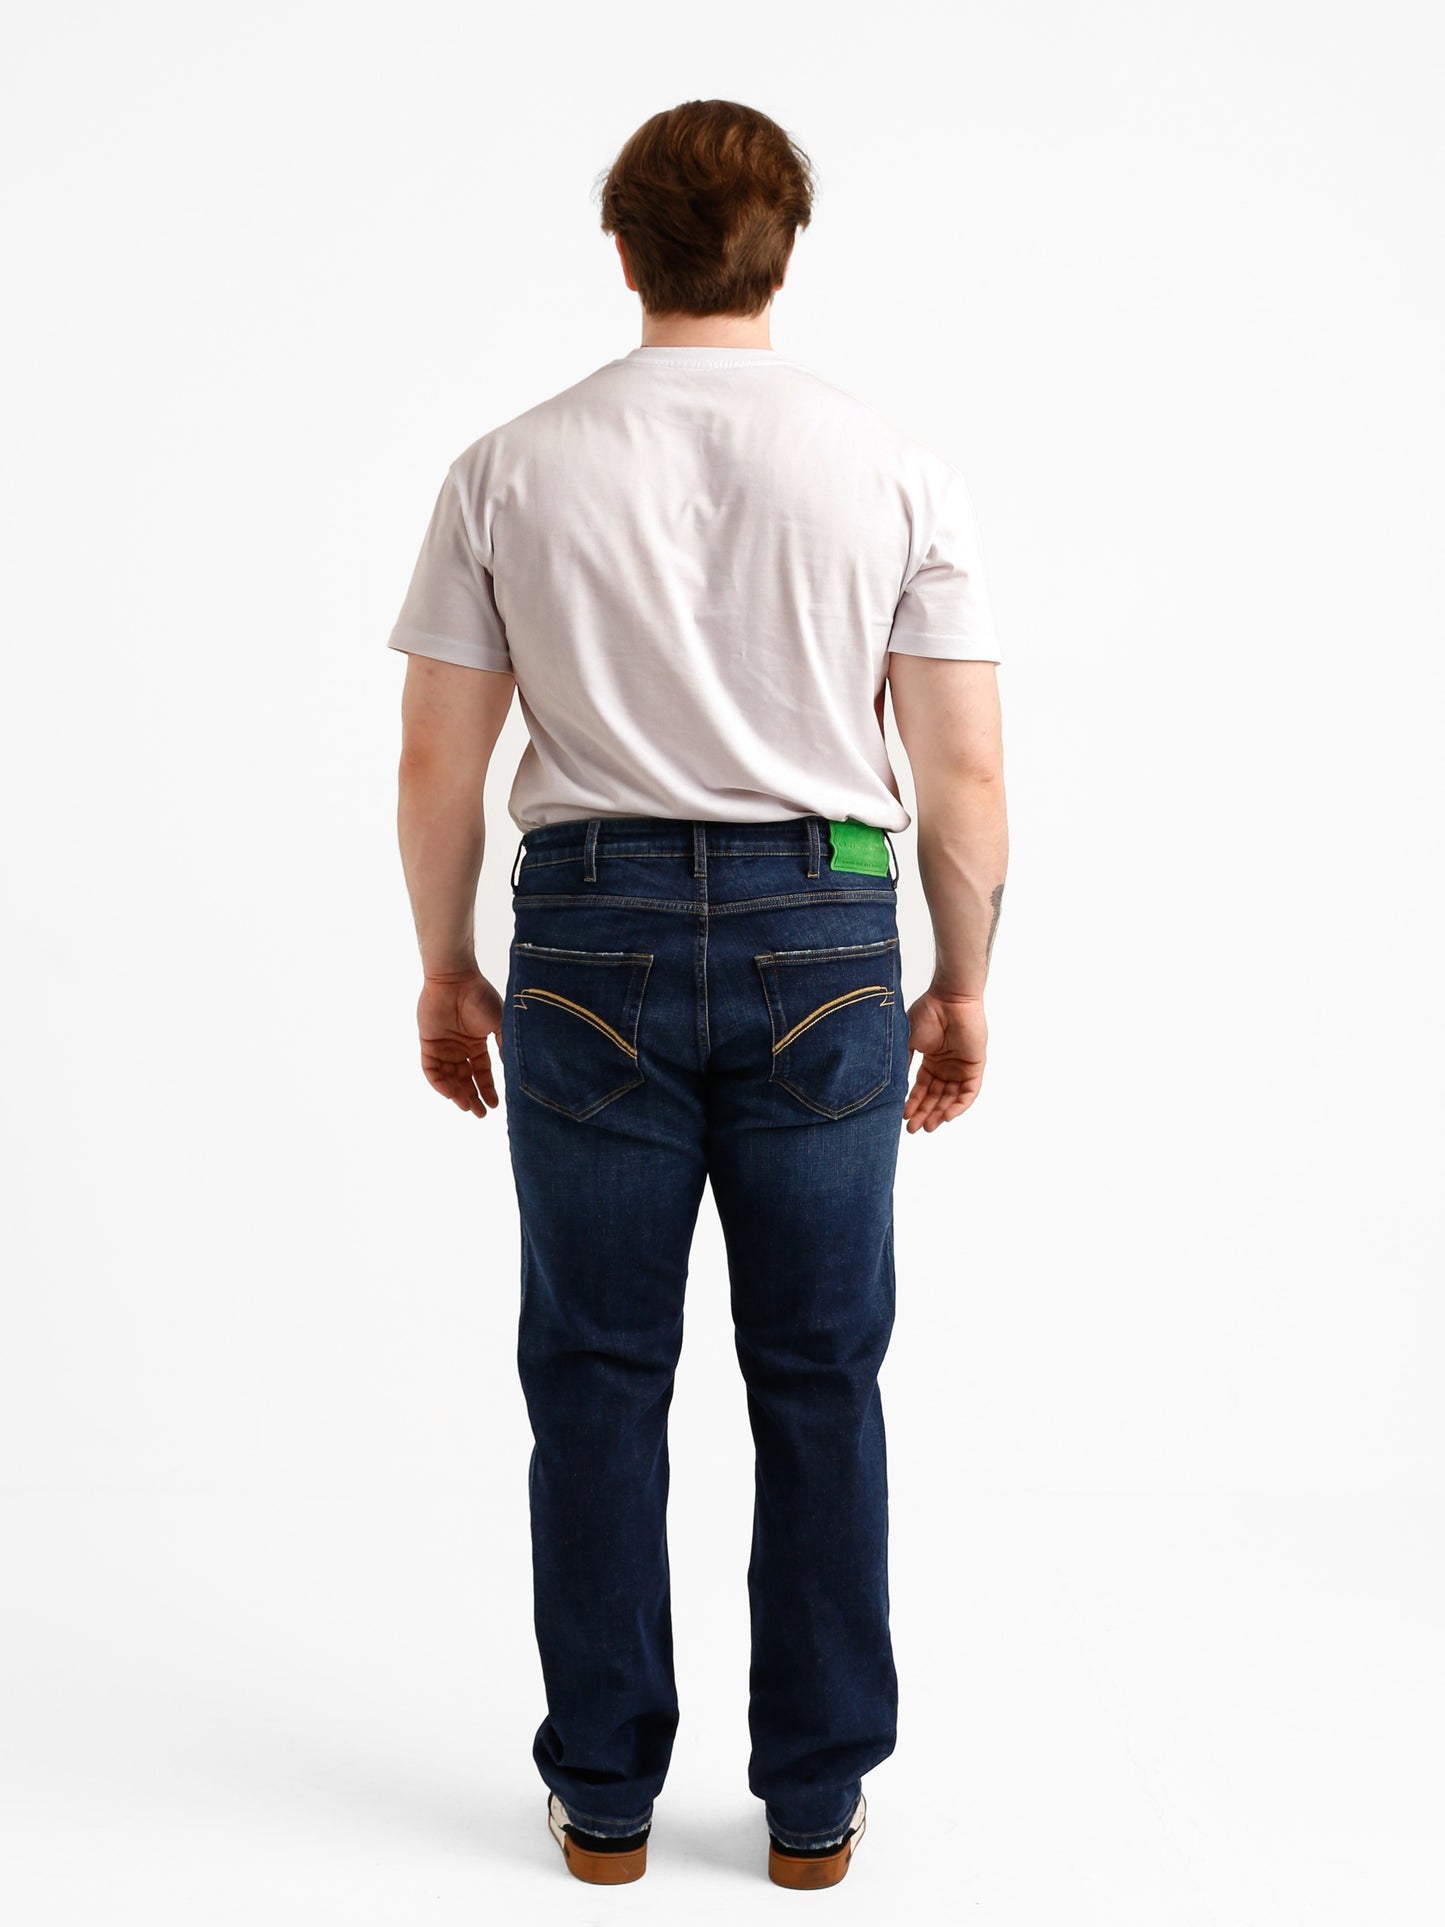 Men's Qvadis BigSize Jeans ENKEL